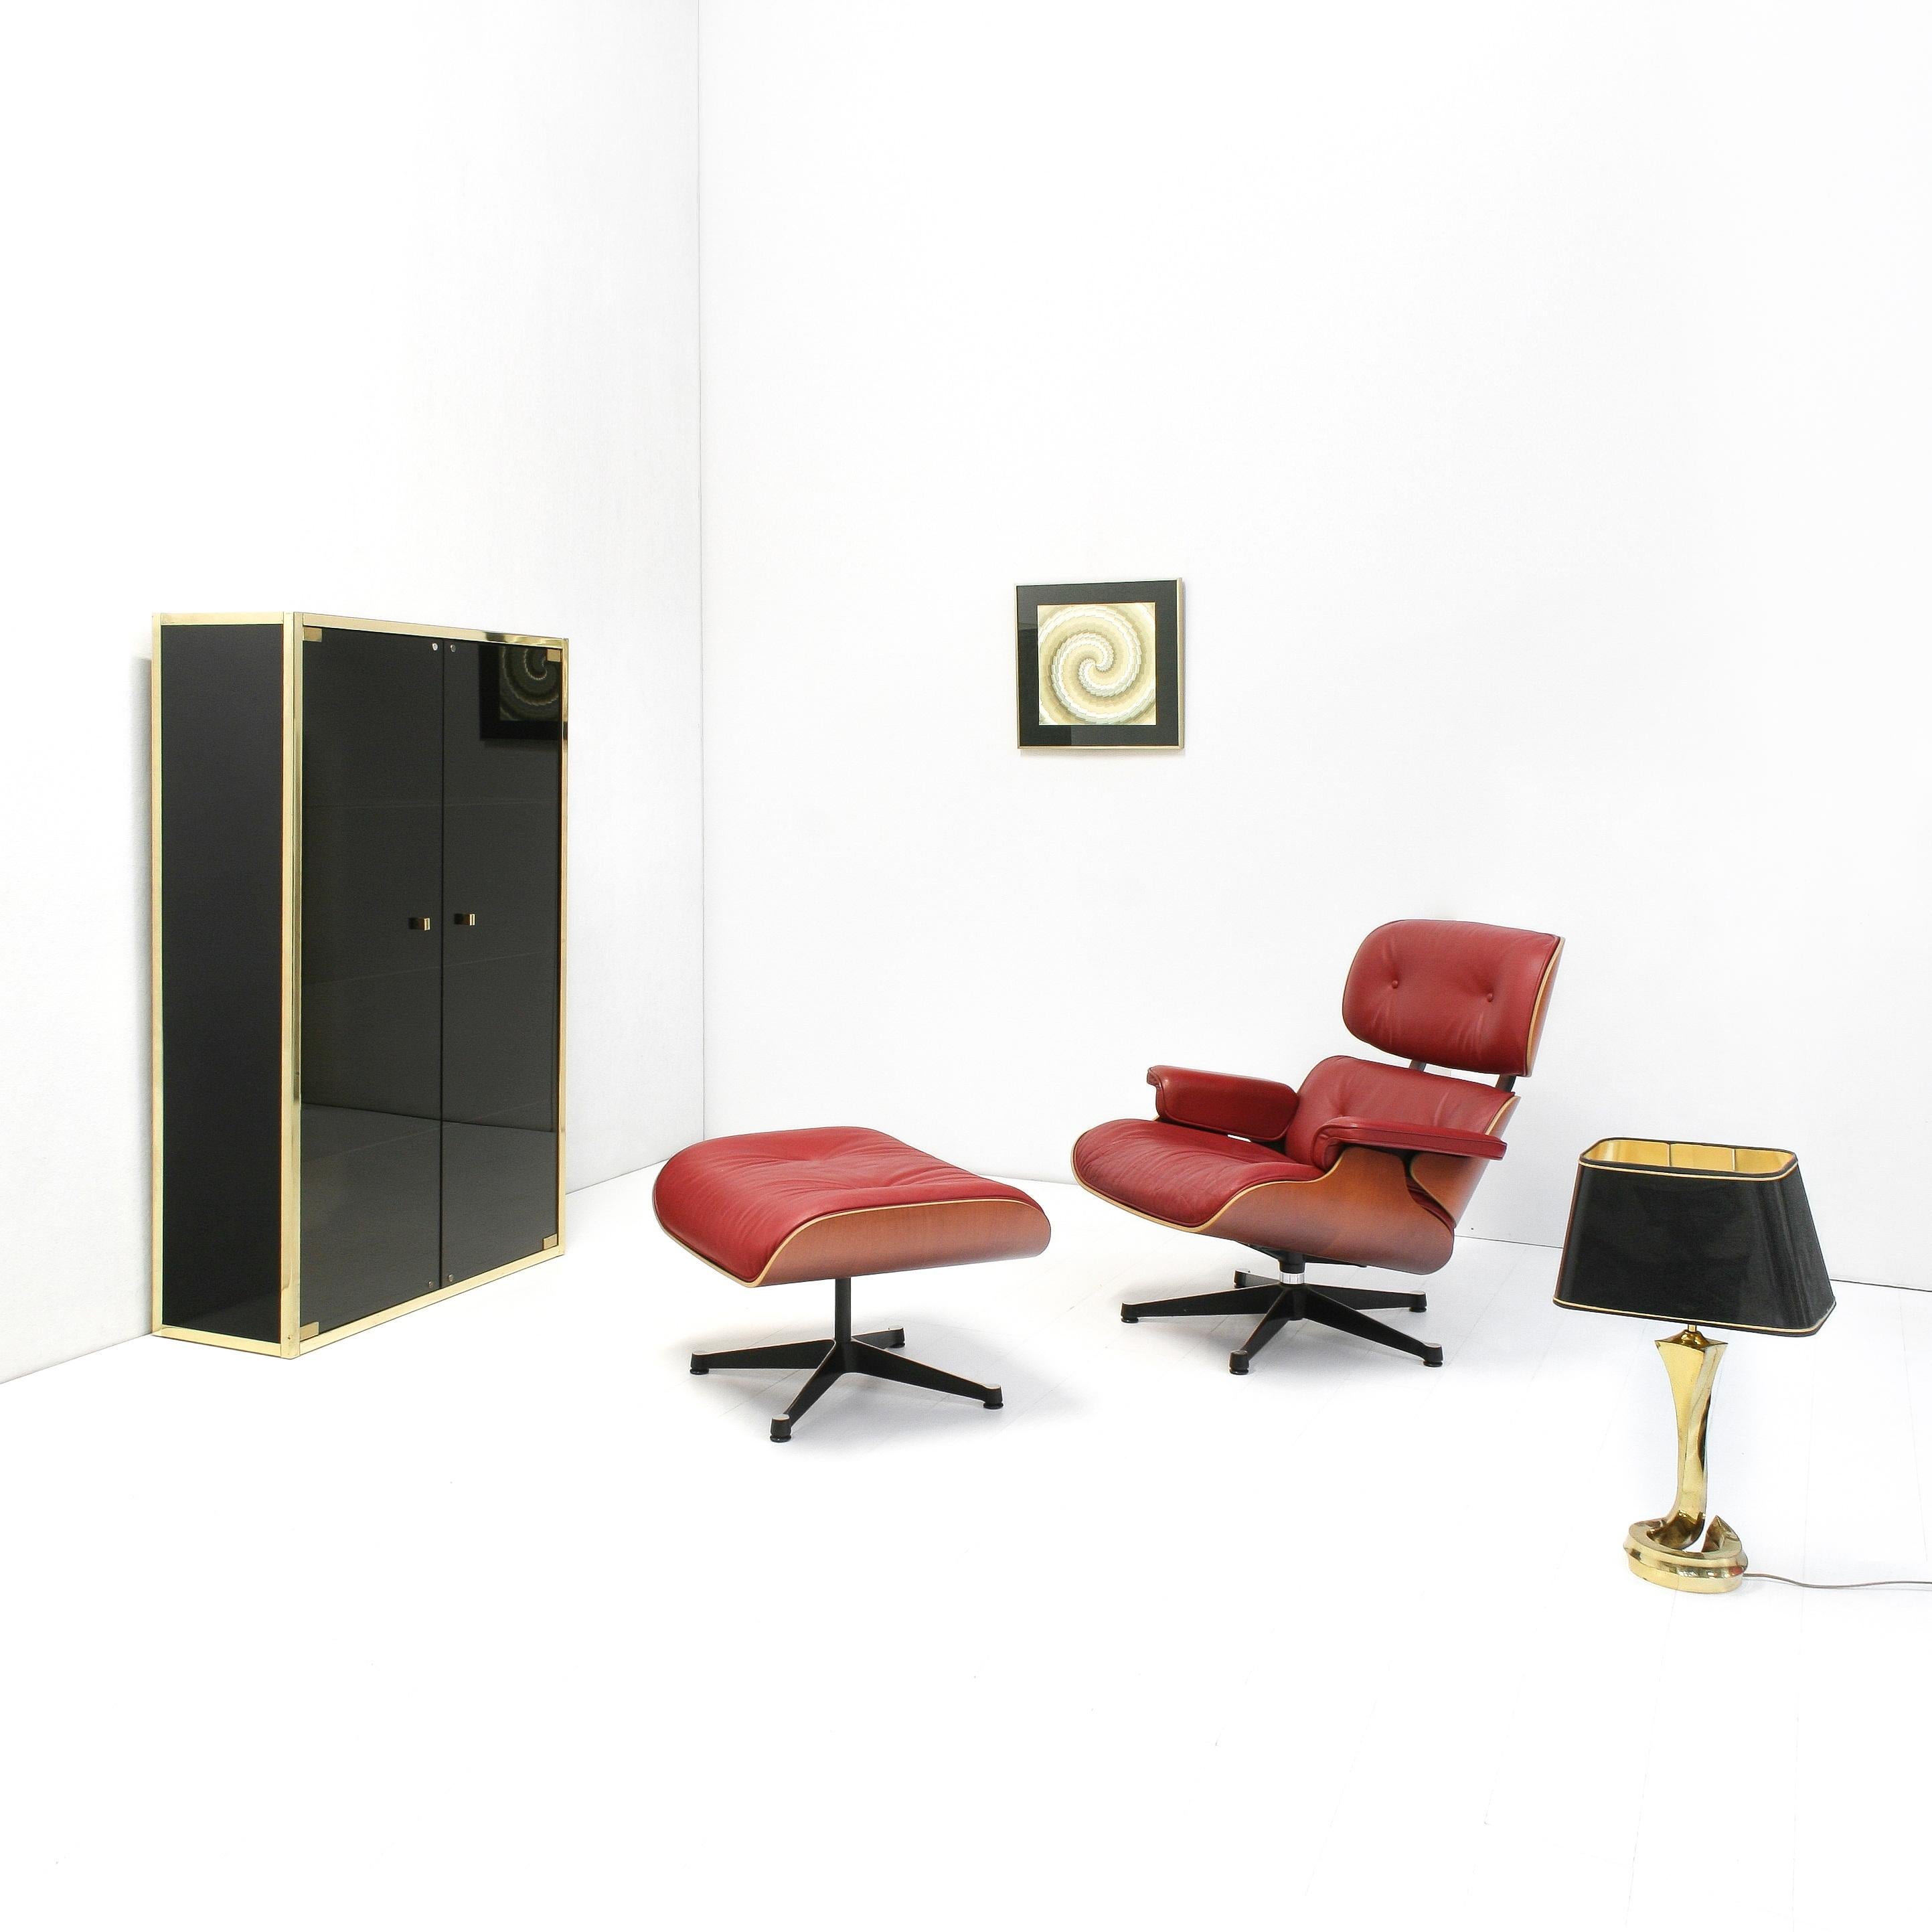 Ce meuble à étagères élégant a été créé dans les années 1970. Il se compose d'un boîtier laqué noir brillant, entouré de bords dorés et de portes et étagères en verre fumé.